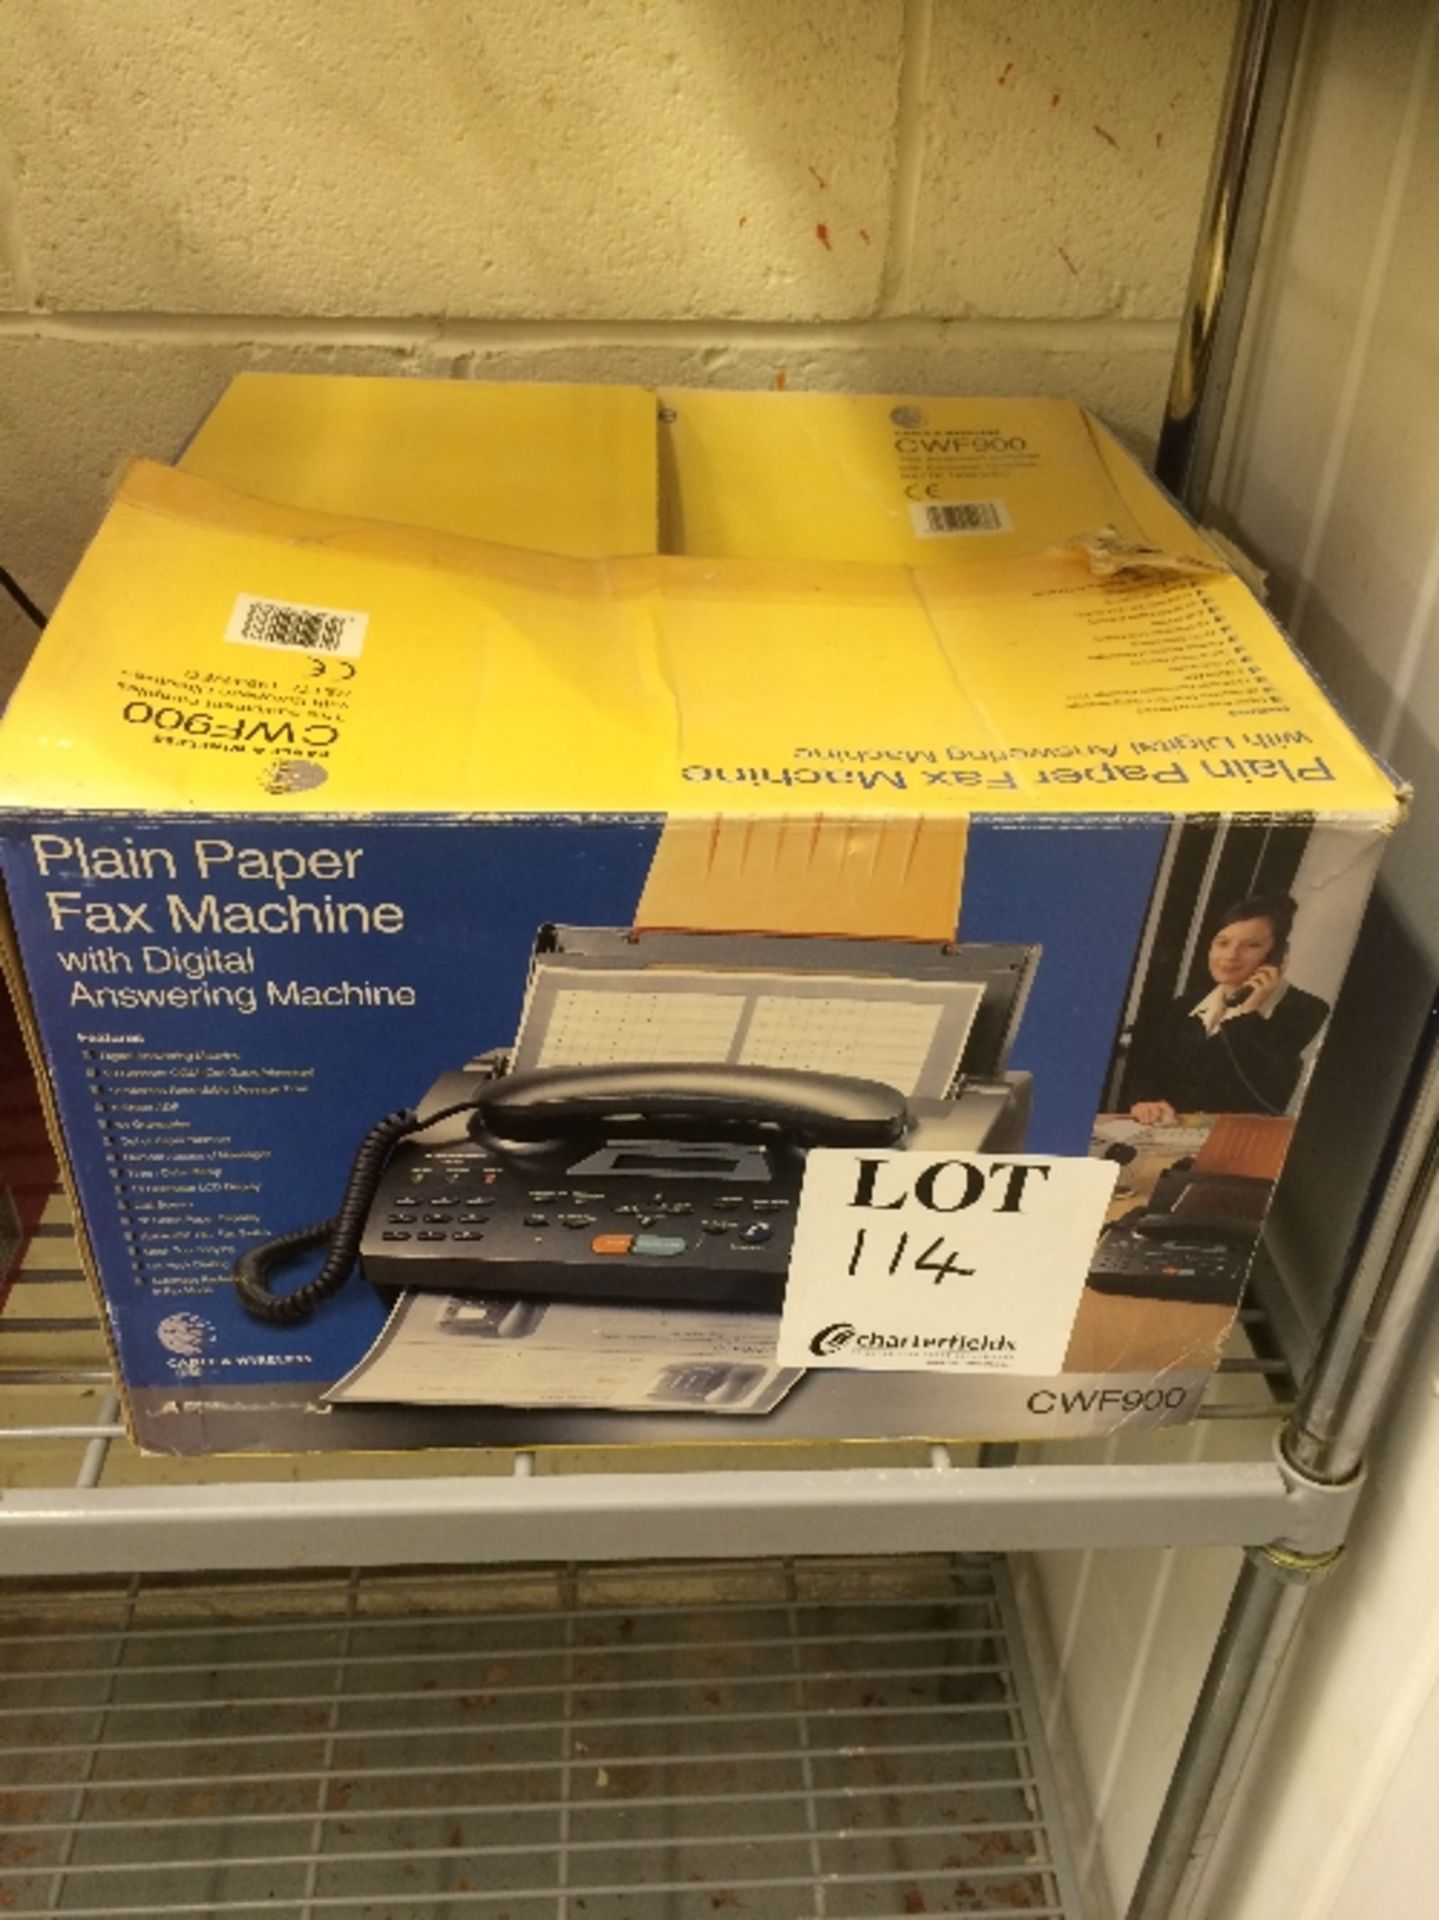 CWF900 plain paper fax machine